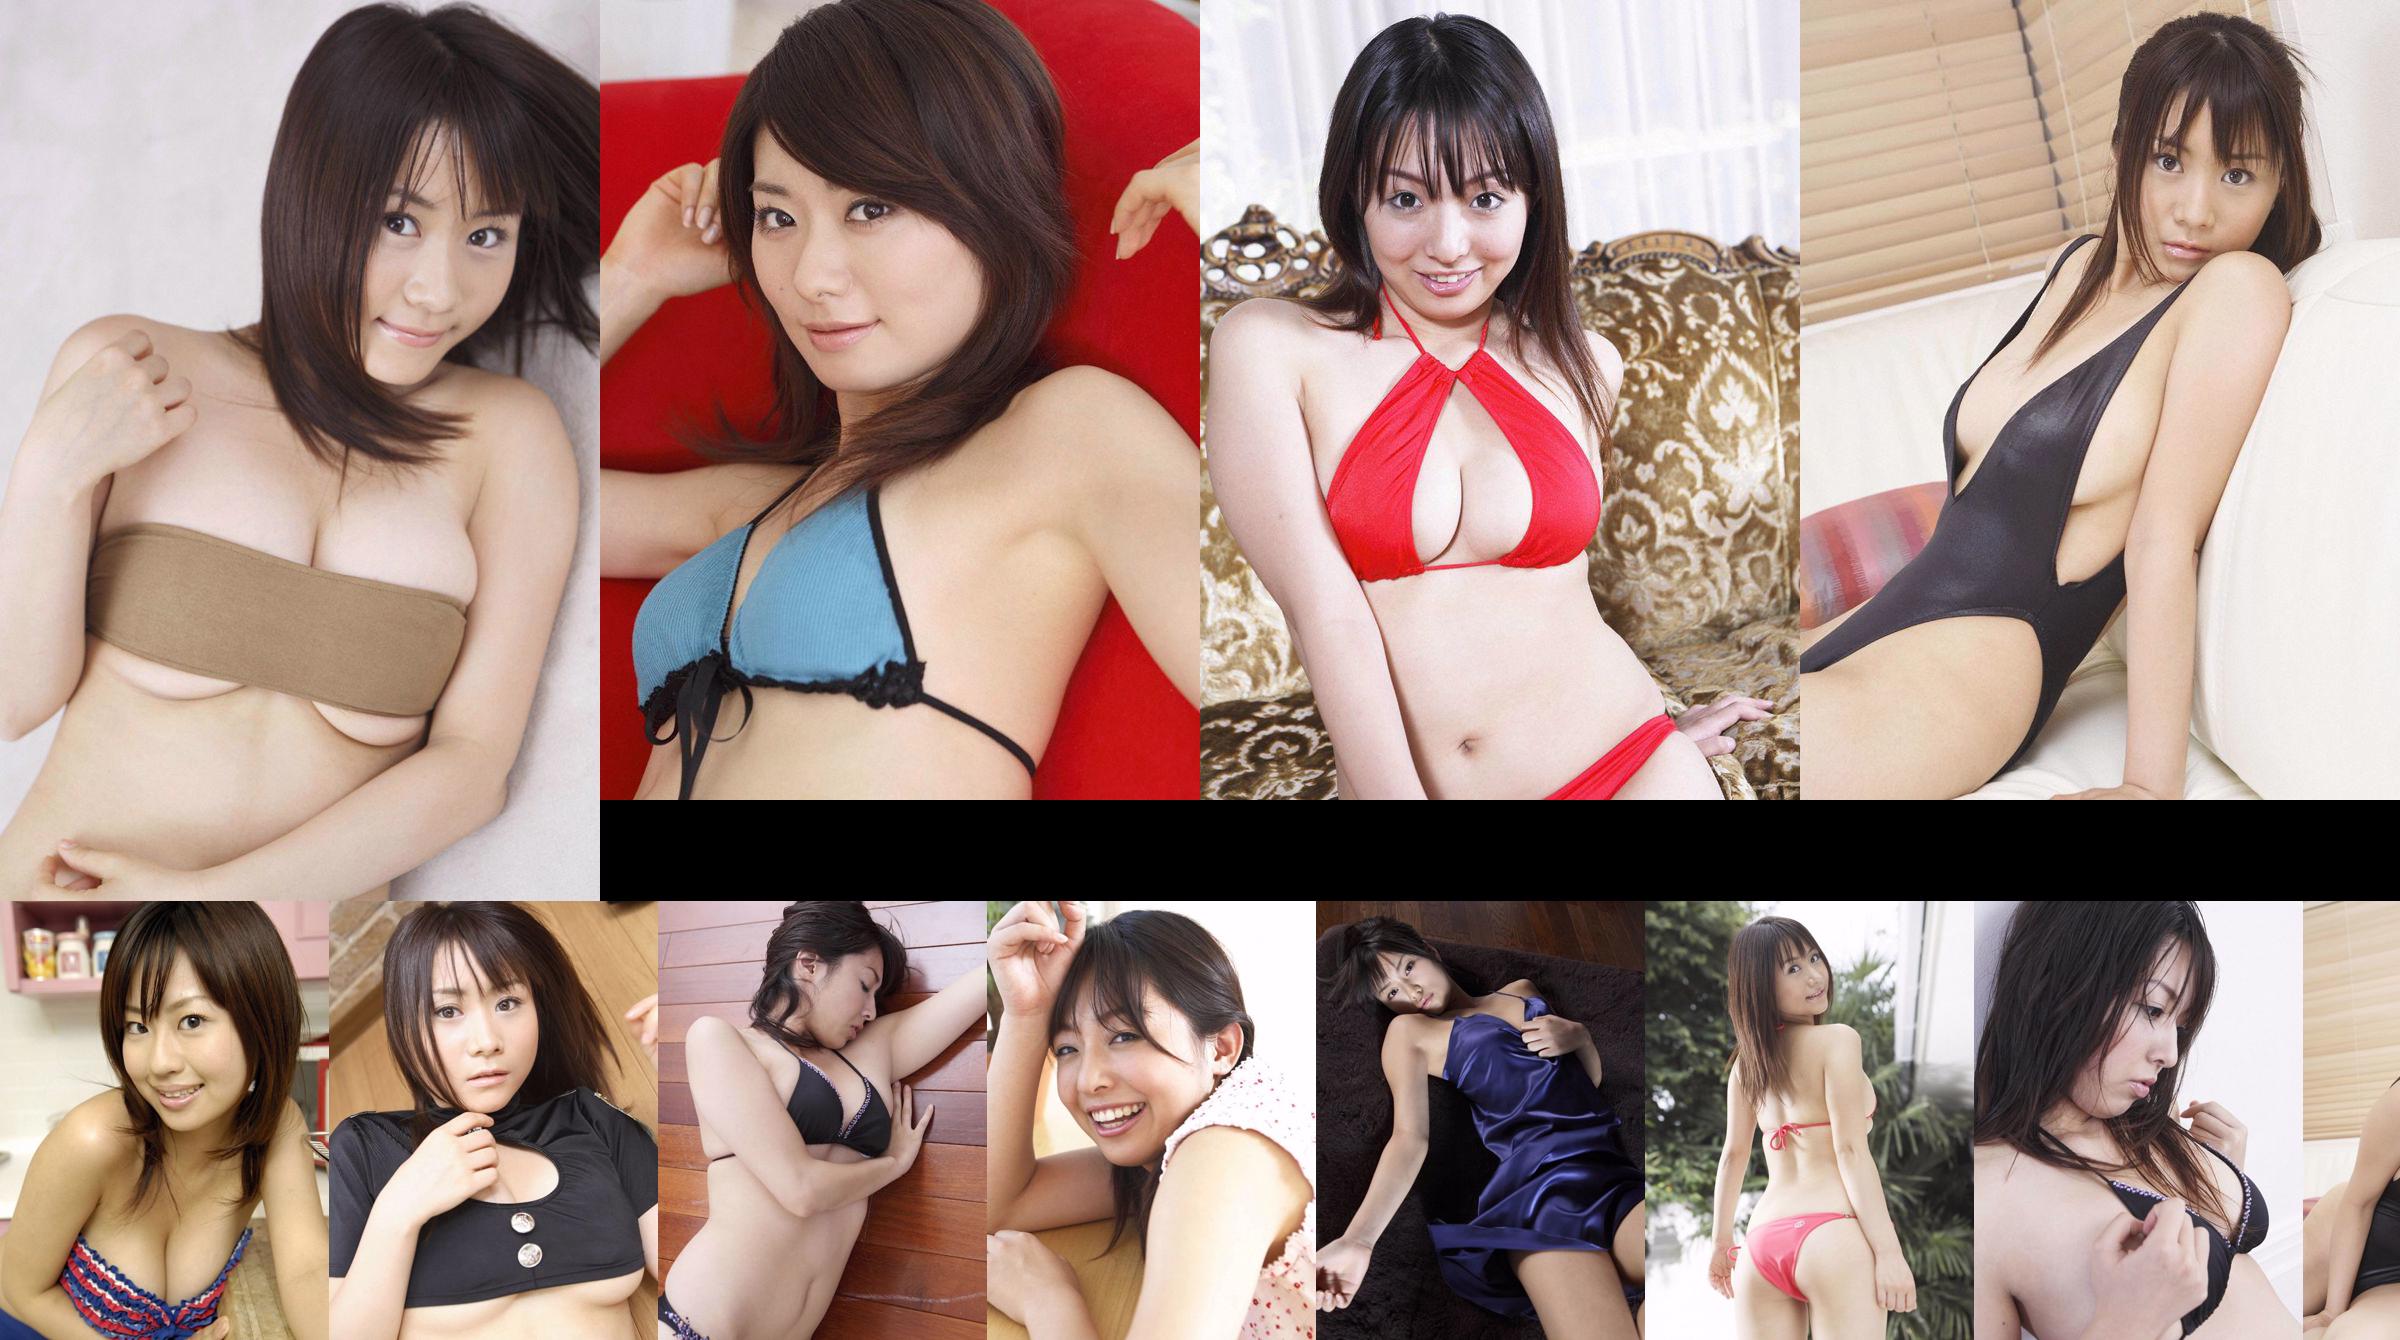 [Wanibooks] NO.37 Ai Arakawa, Hitomi Kaikawa, Hitomi Kitamura, Naomi I, Chii Matsuda Photo Collection No.c6bfe9 Pagina 1